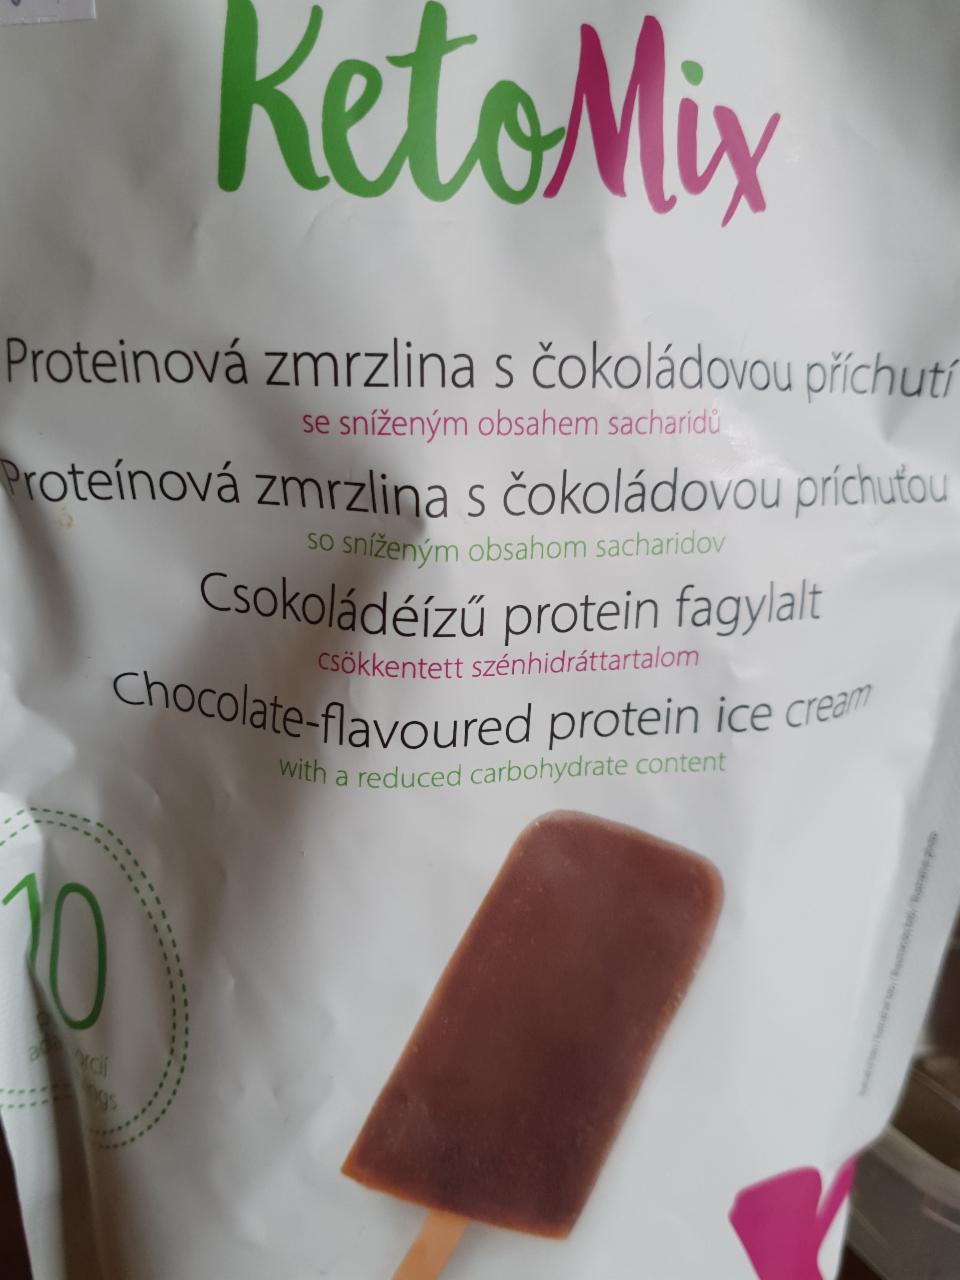 Fotografie - Proteinová zmrzlina s čokoládovou příchutí KetoMix